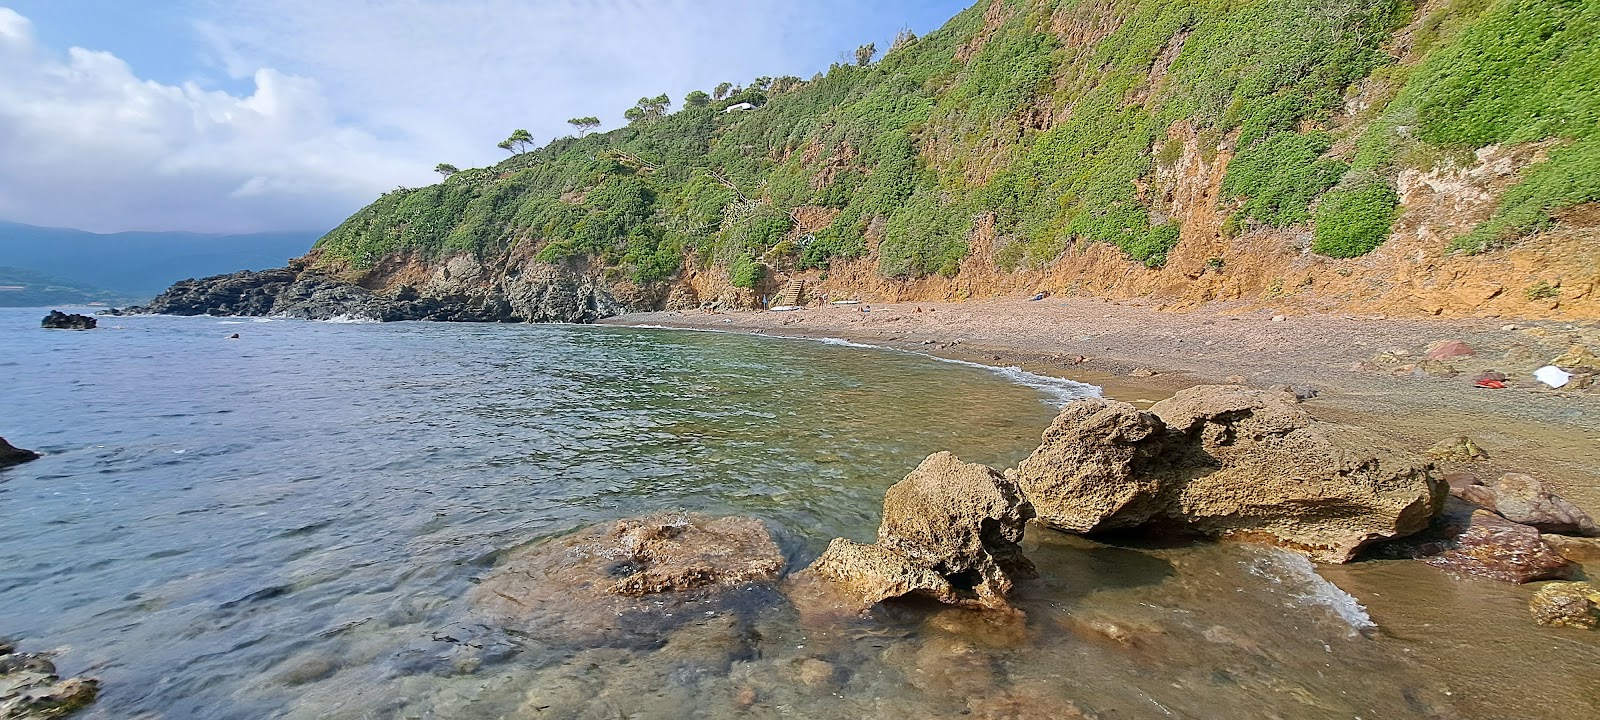 Foto de Spiaggia Canata ubicado en área natural